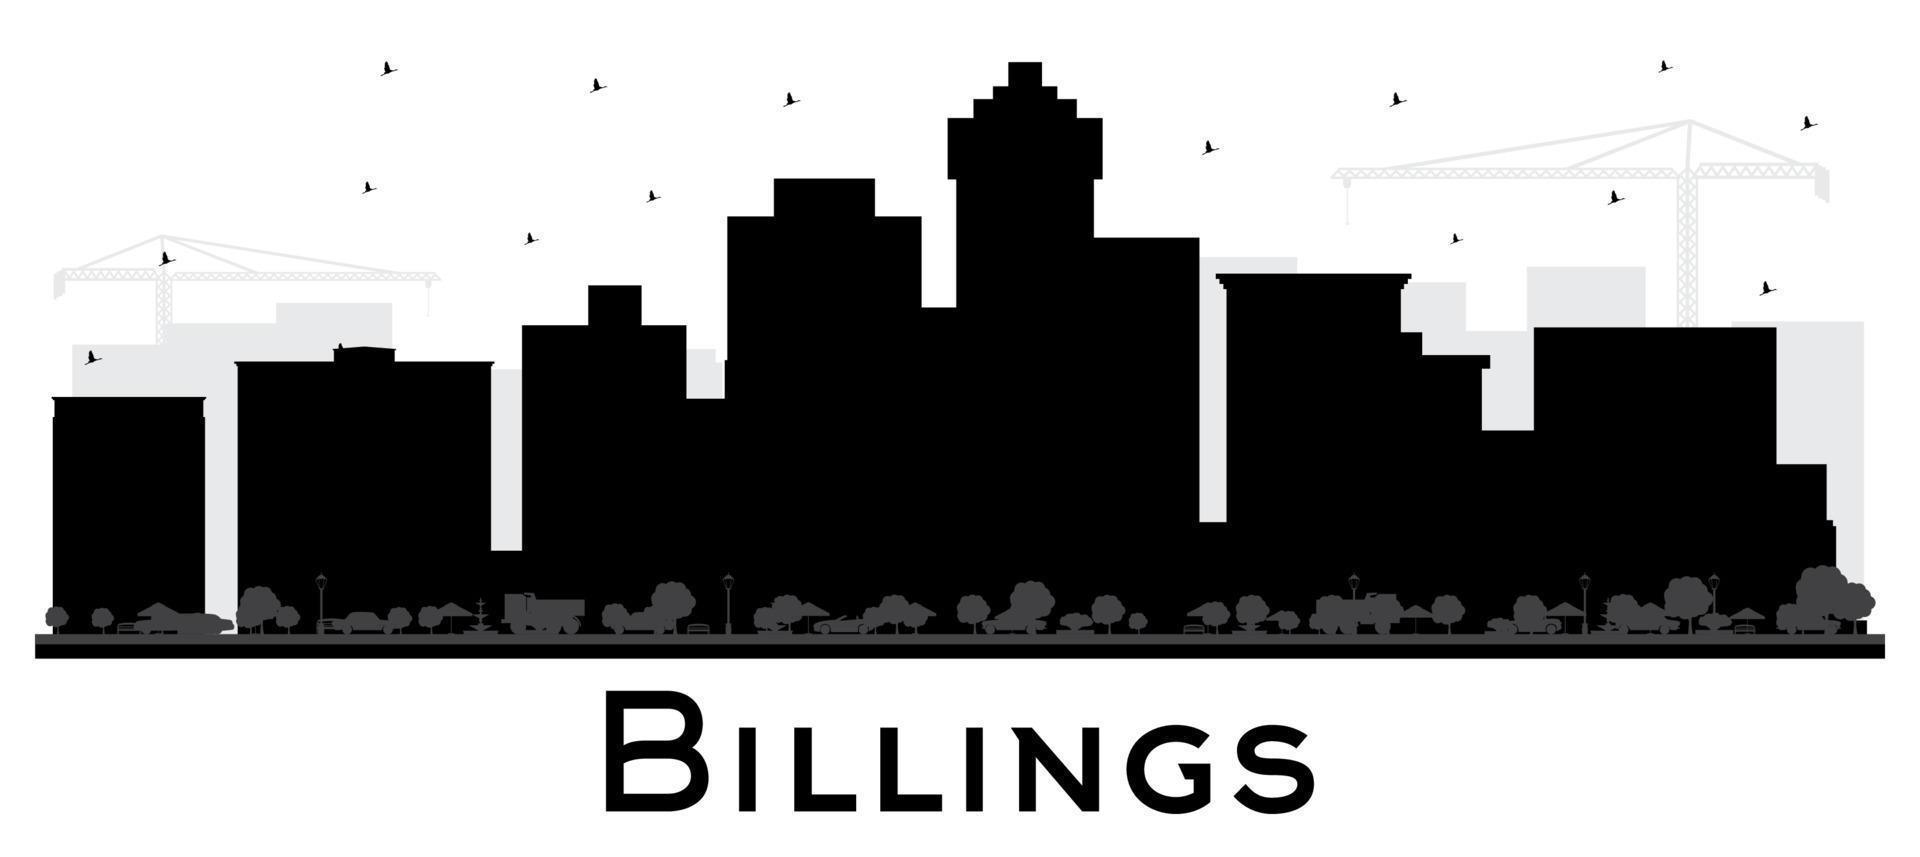 Billings montana city skyline silhueta com prédios pretos isolados no branco. vetor